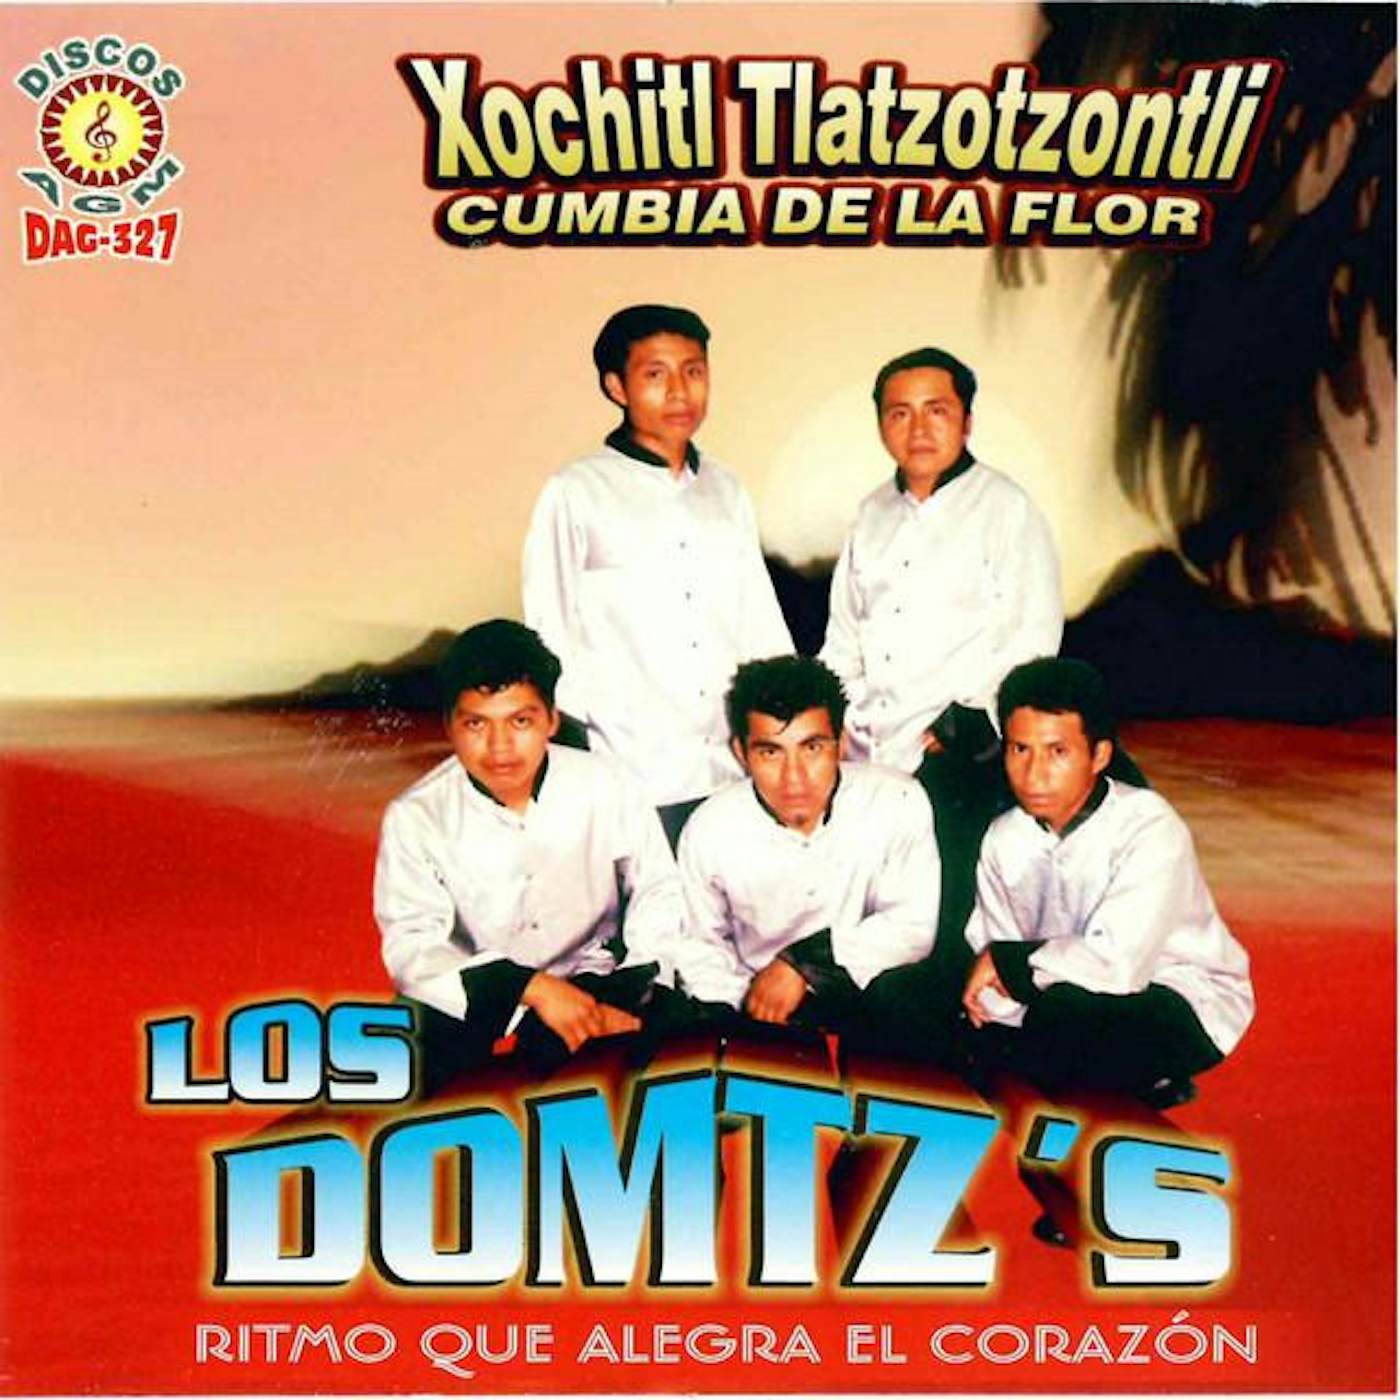 Los Domtz's